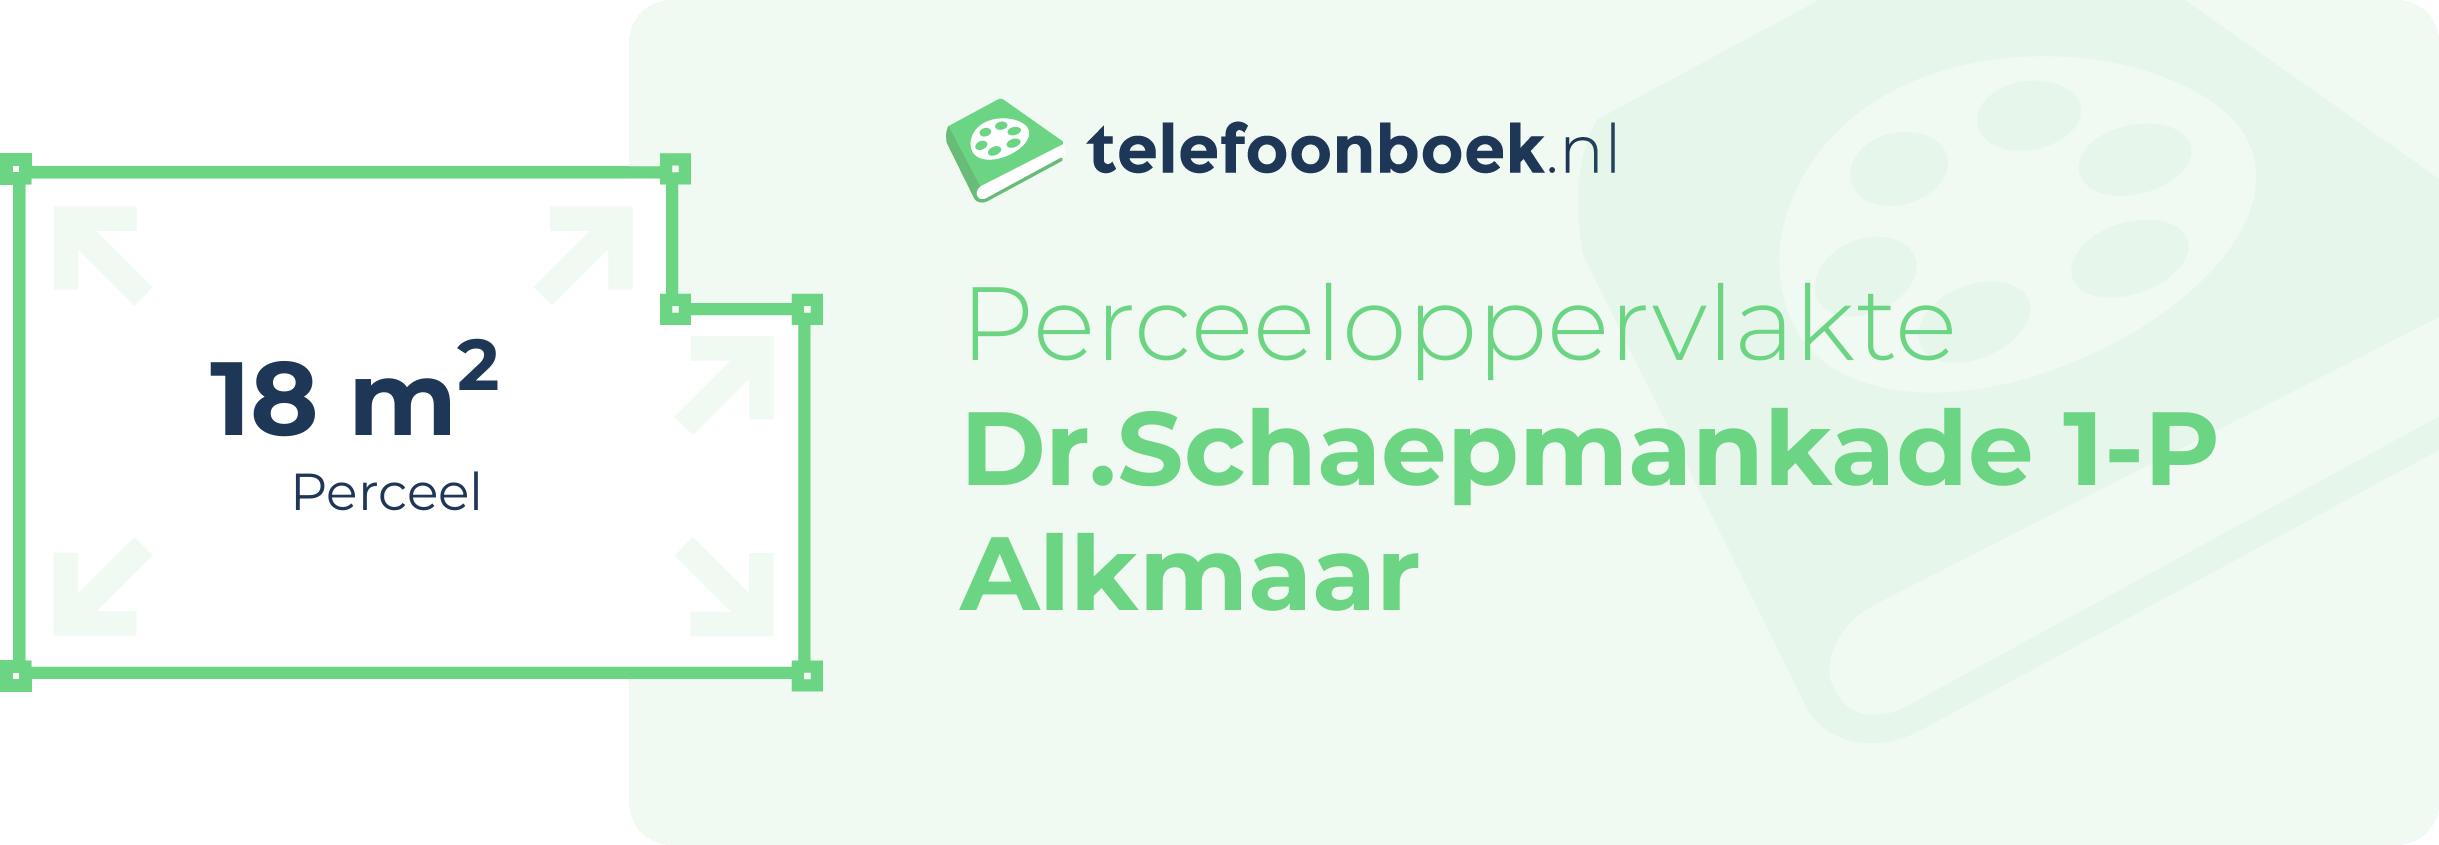 Perceeloppervlakte Dr.Schaepmankade 1-P Alkmaar